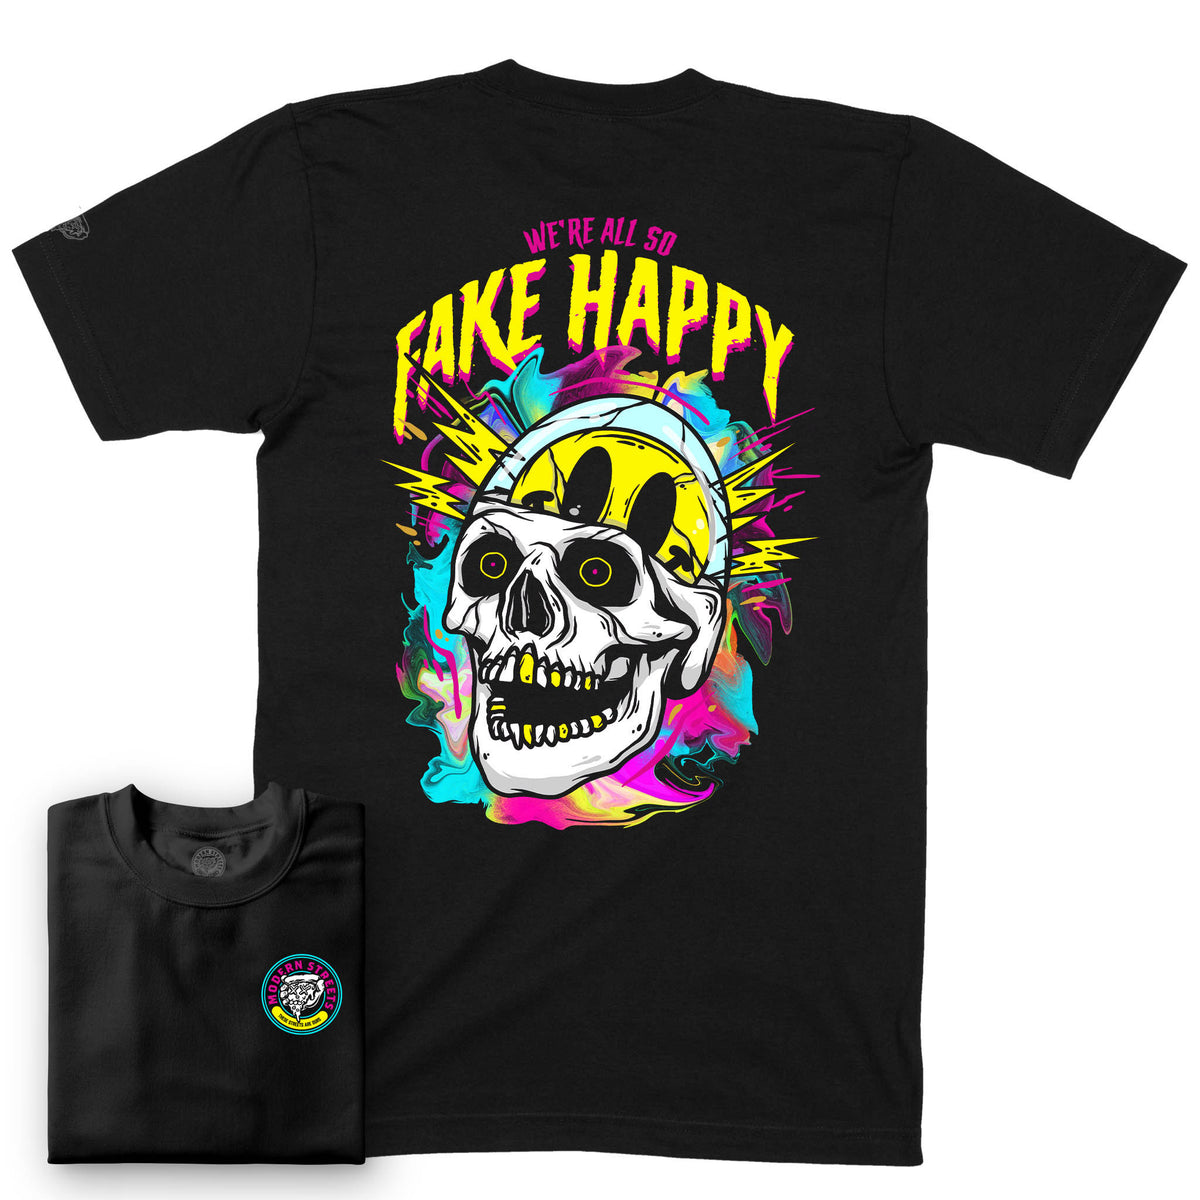 Fake Happy Short-Sleeve T-Shirt